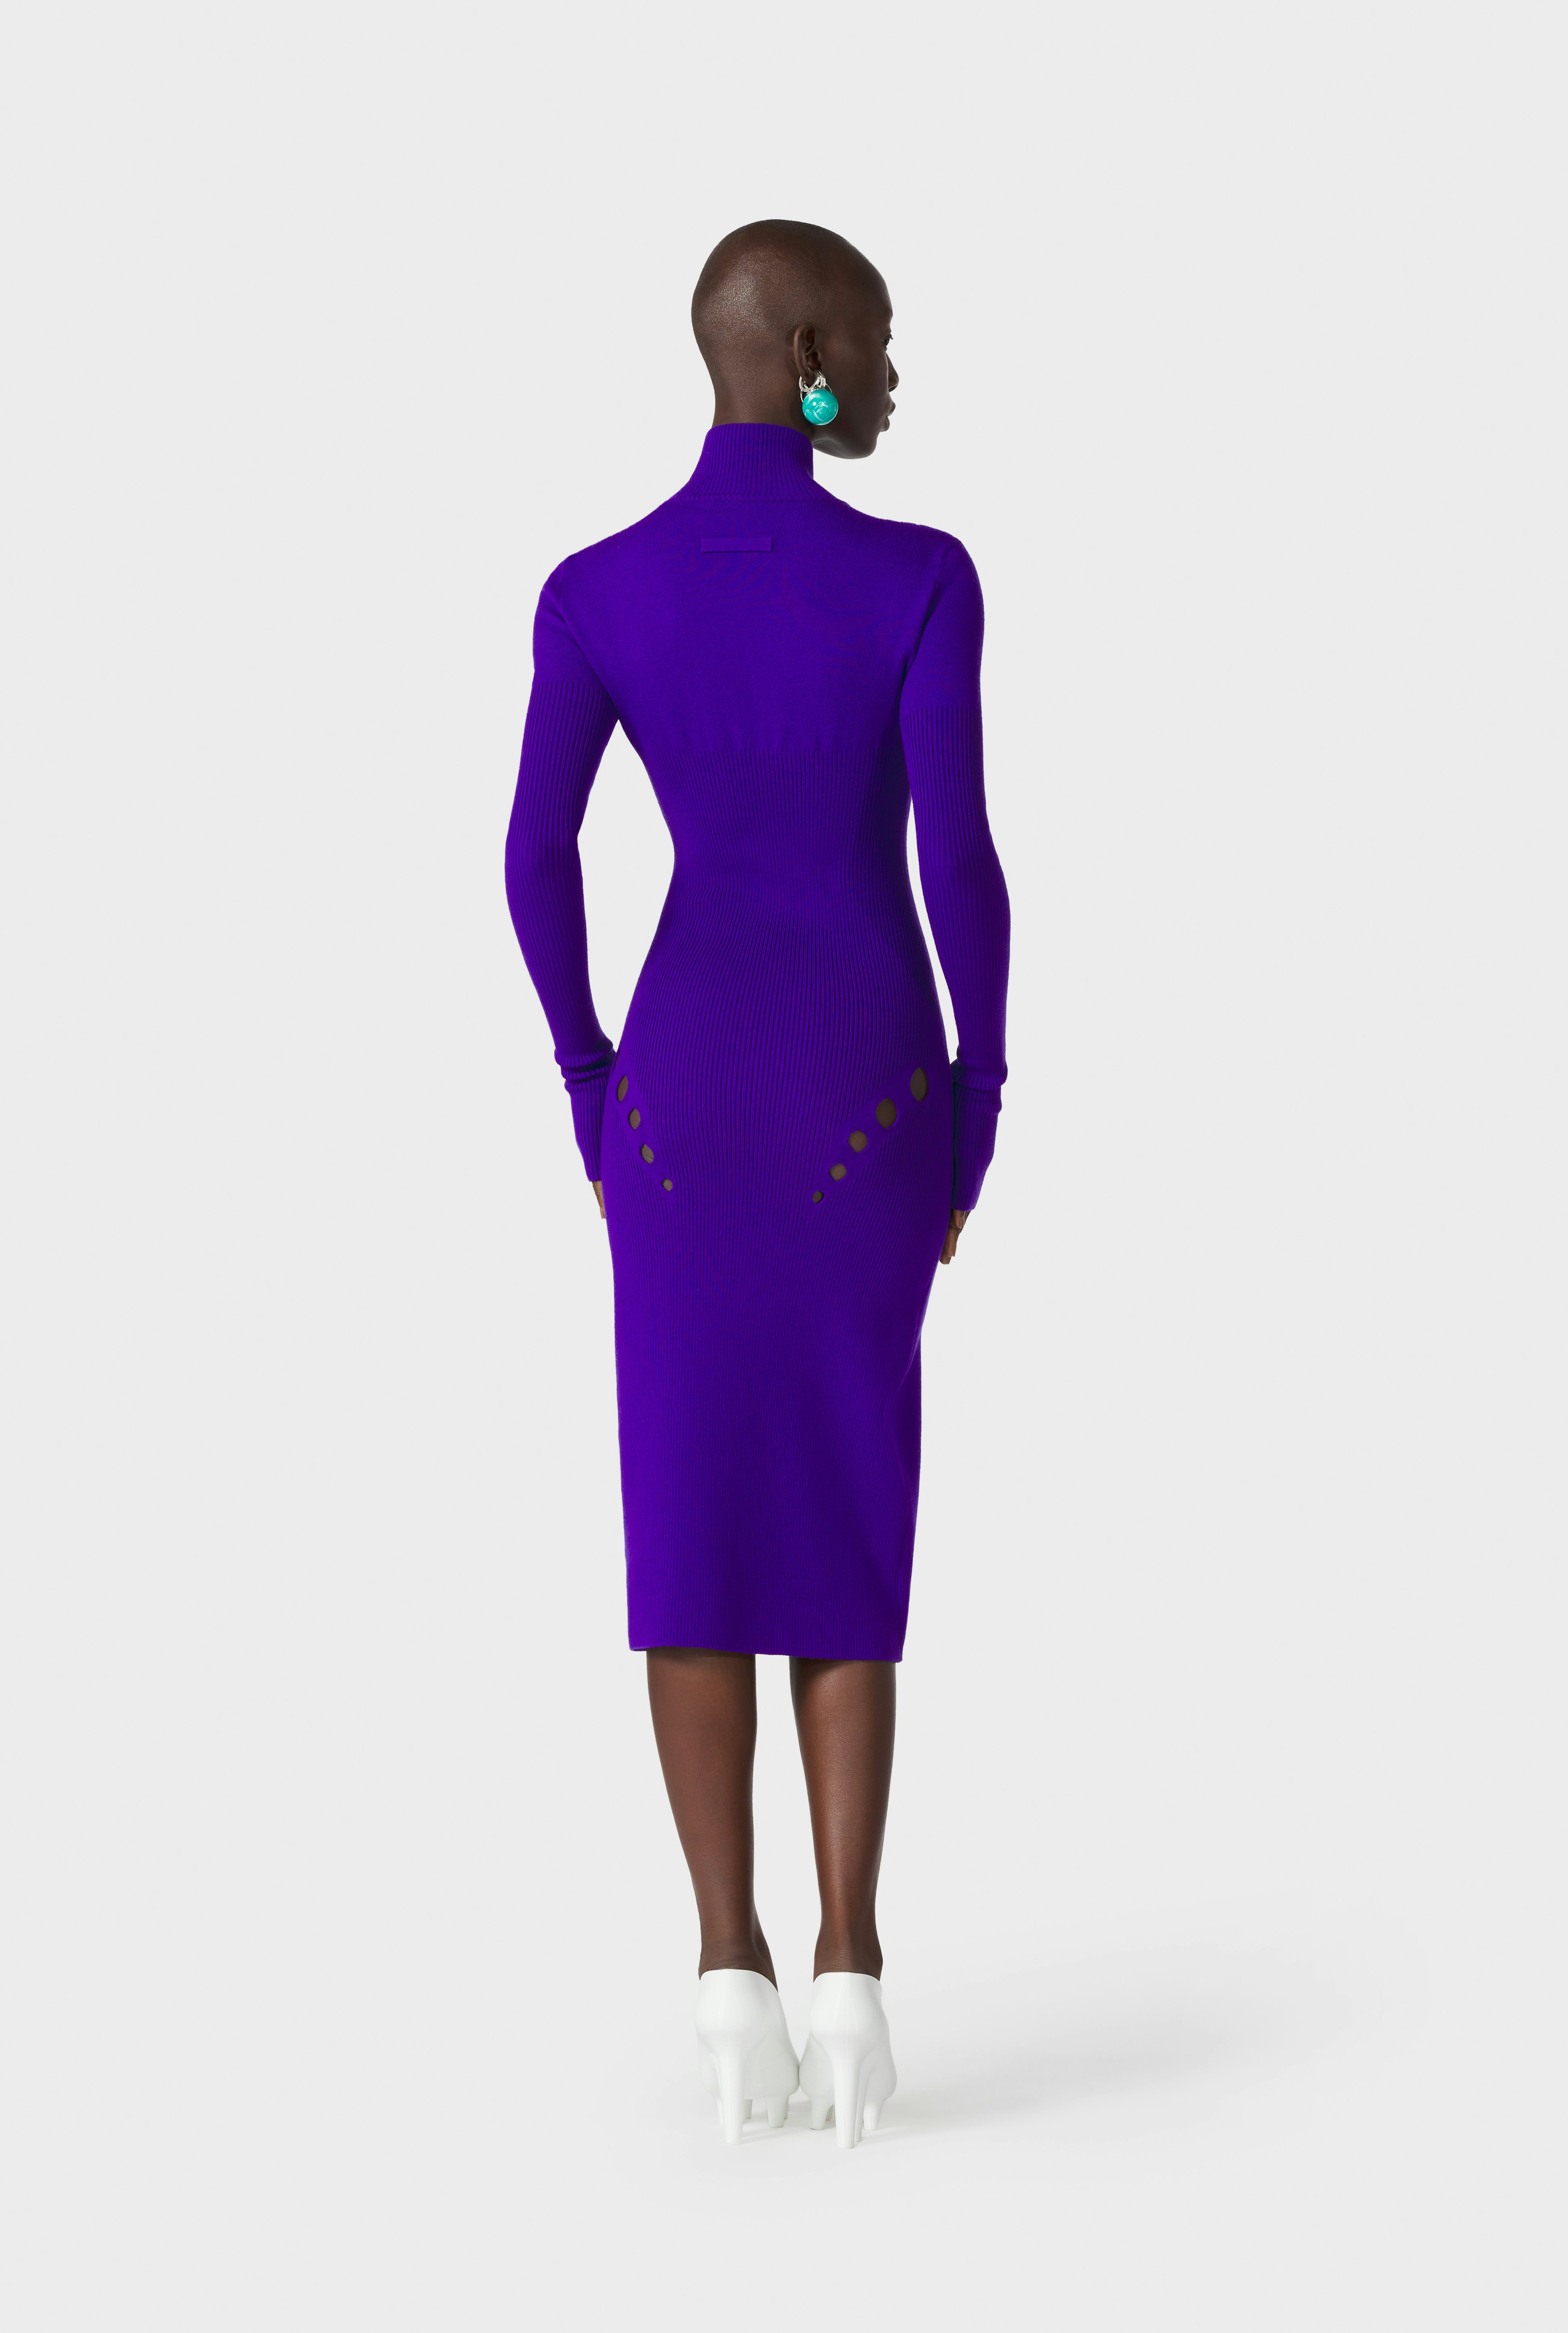 The Purple Openworked Knit Dress Jean Paul Gaultier